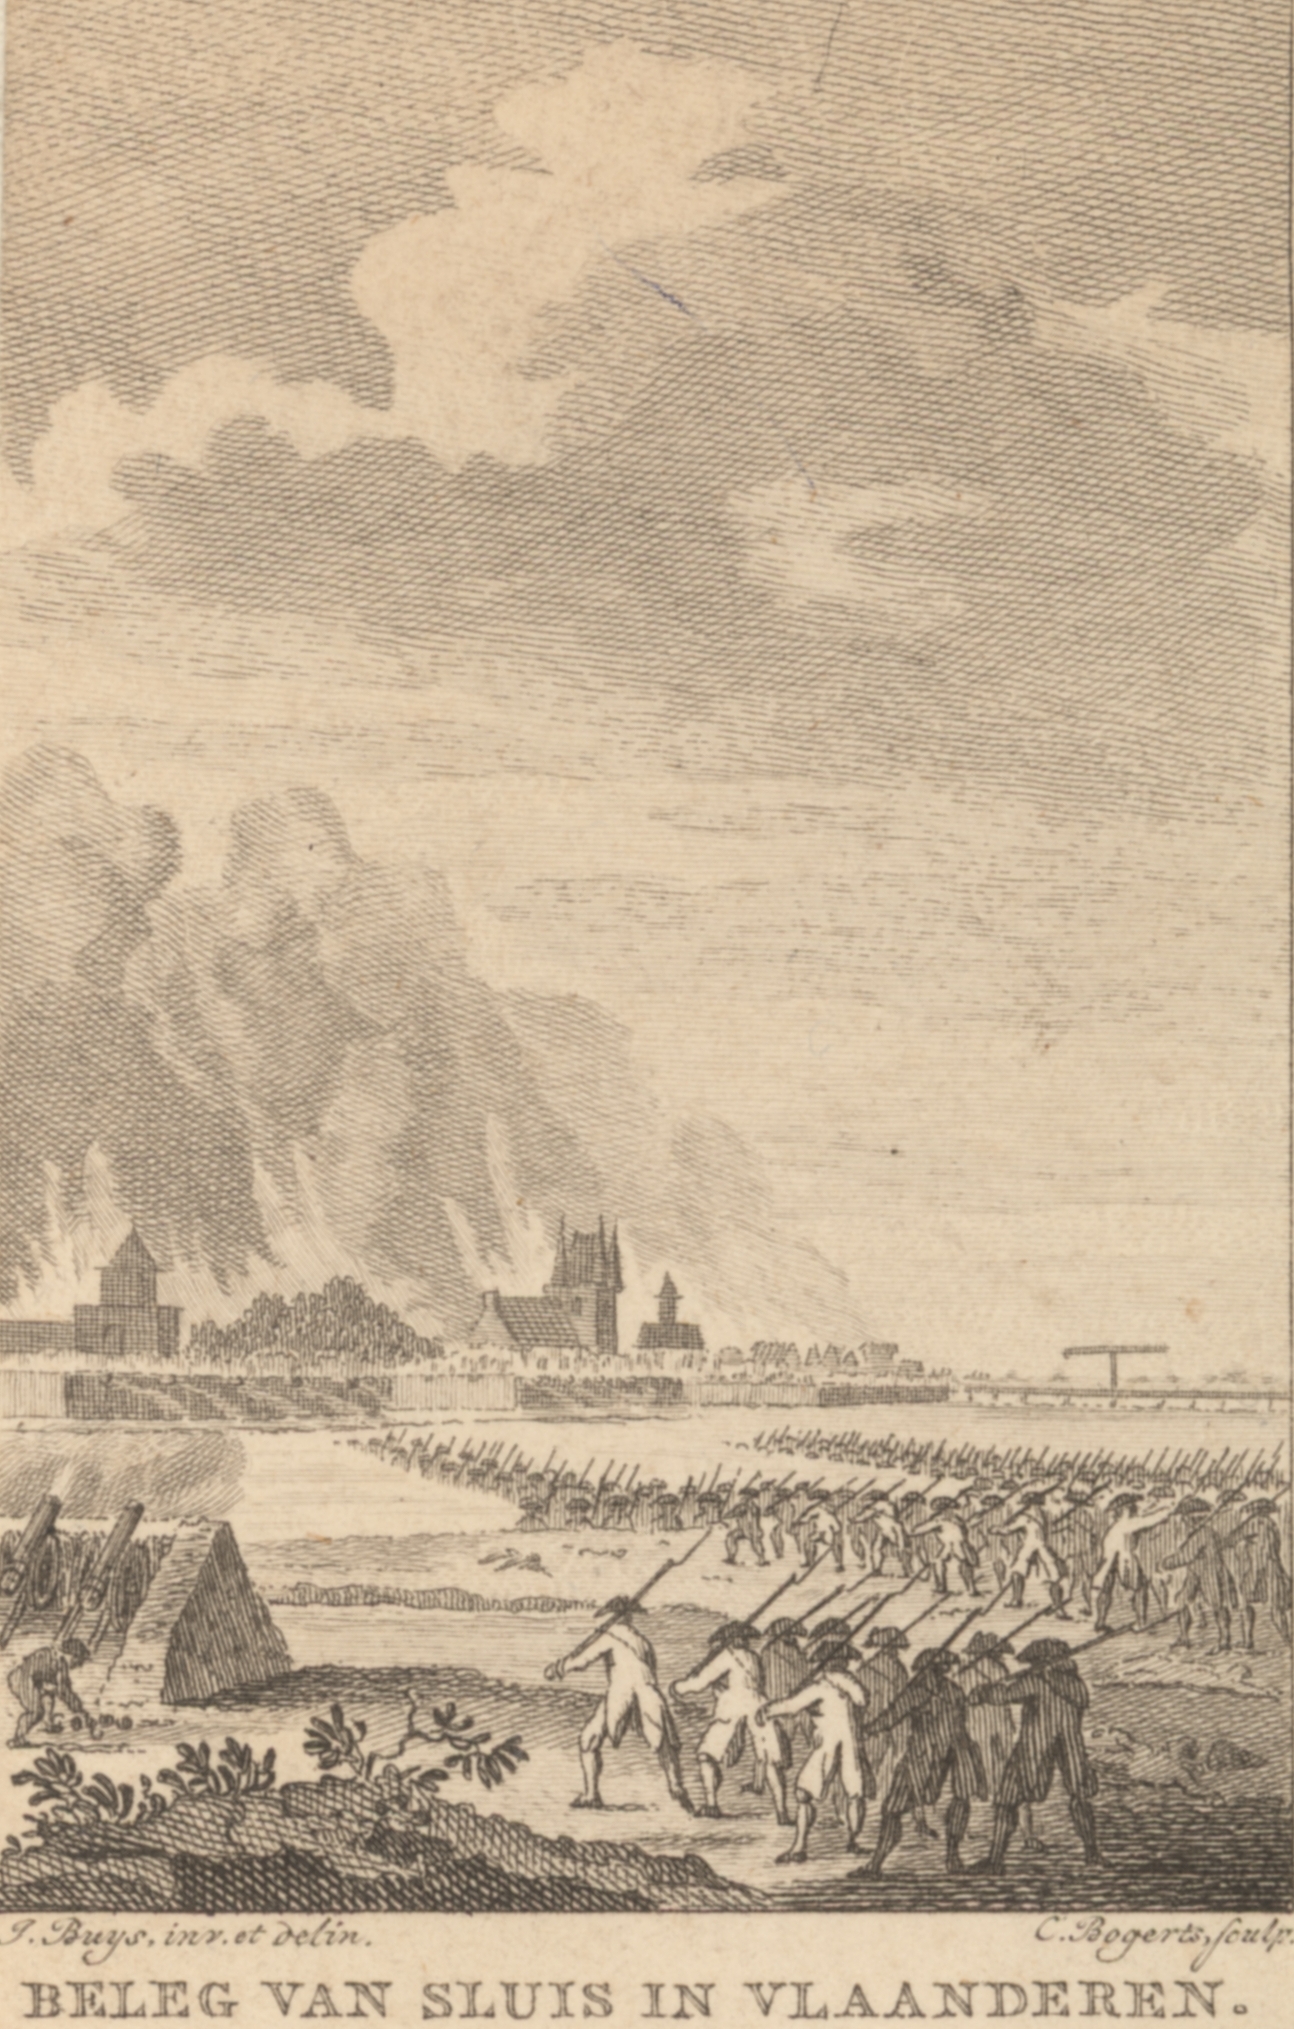 Beleg van Sluis door de Fransen, 1793.